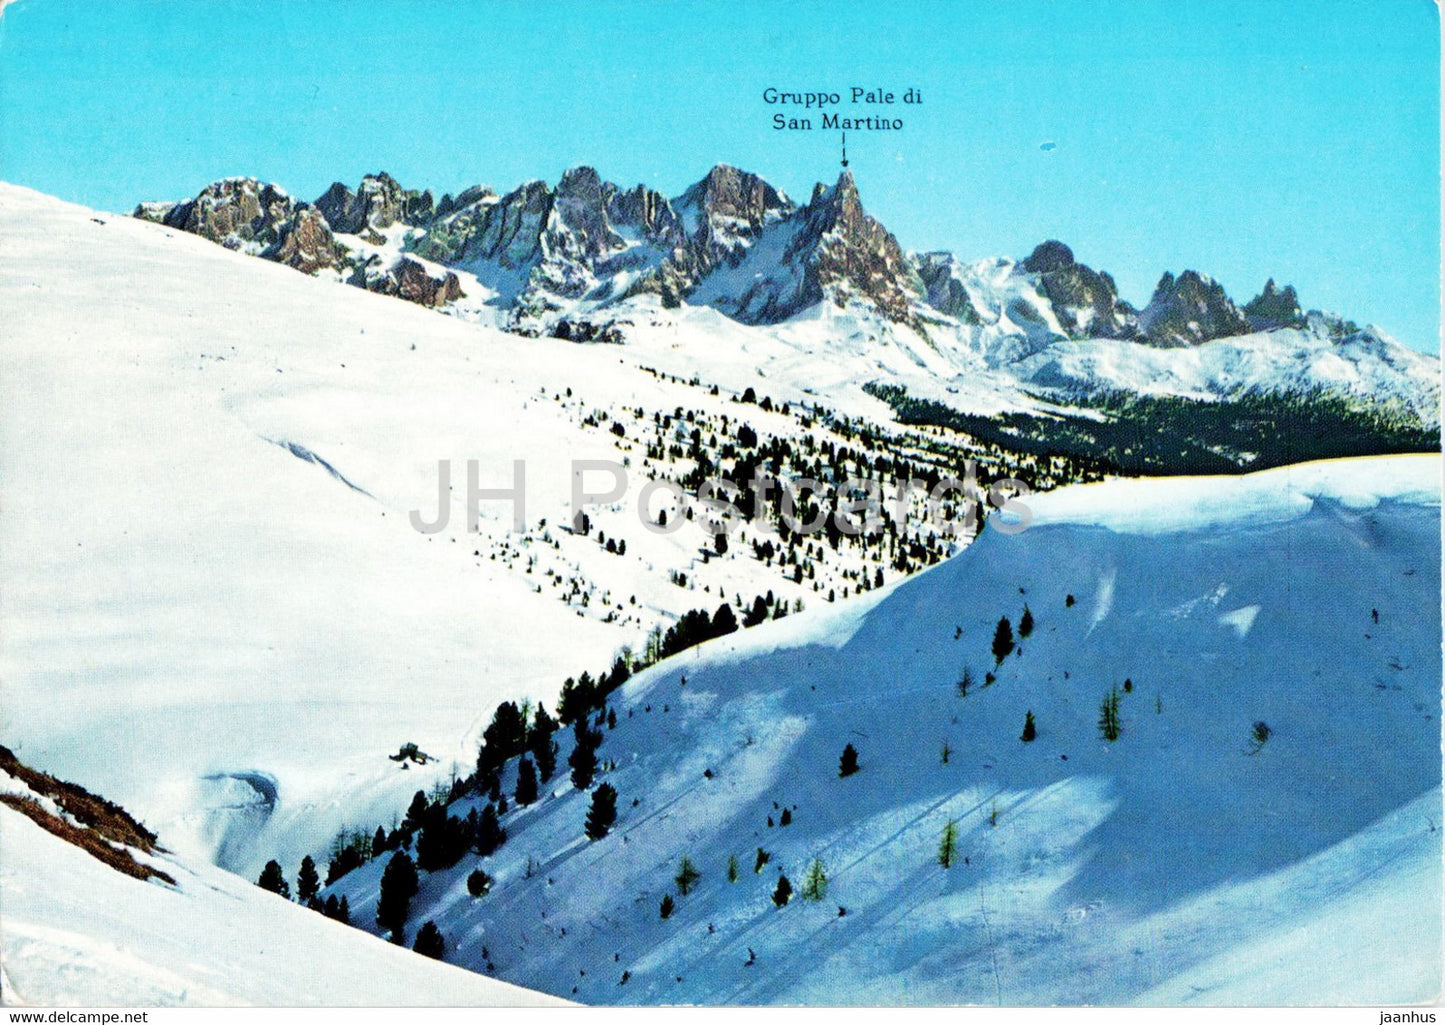 Dolomiti - Trentino - Moena 1184 m - Funivie Lusia - Panorama da le Cune - Italy - unused - JH Postcards